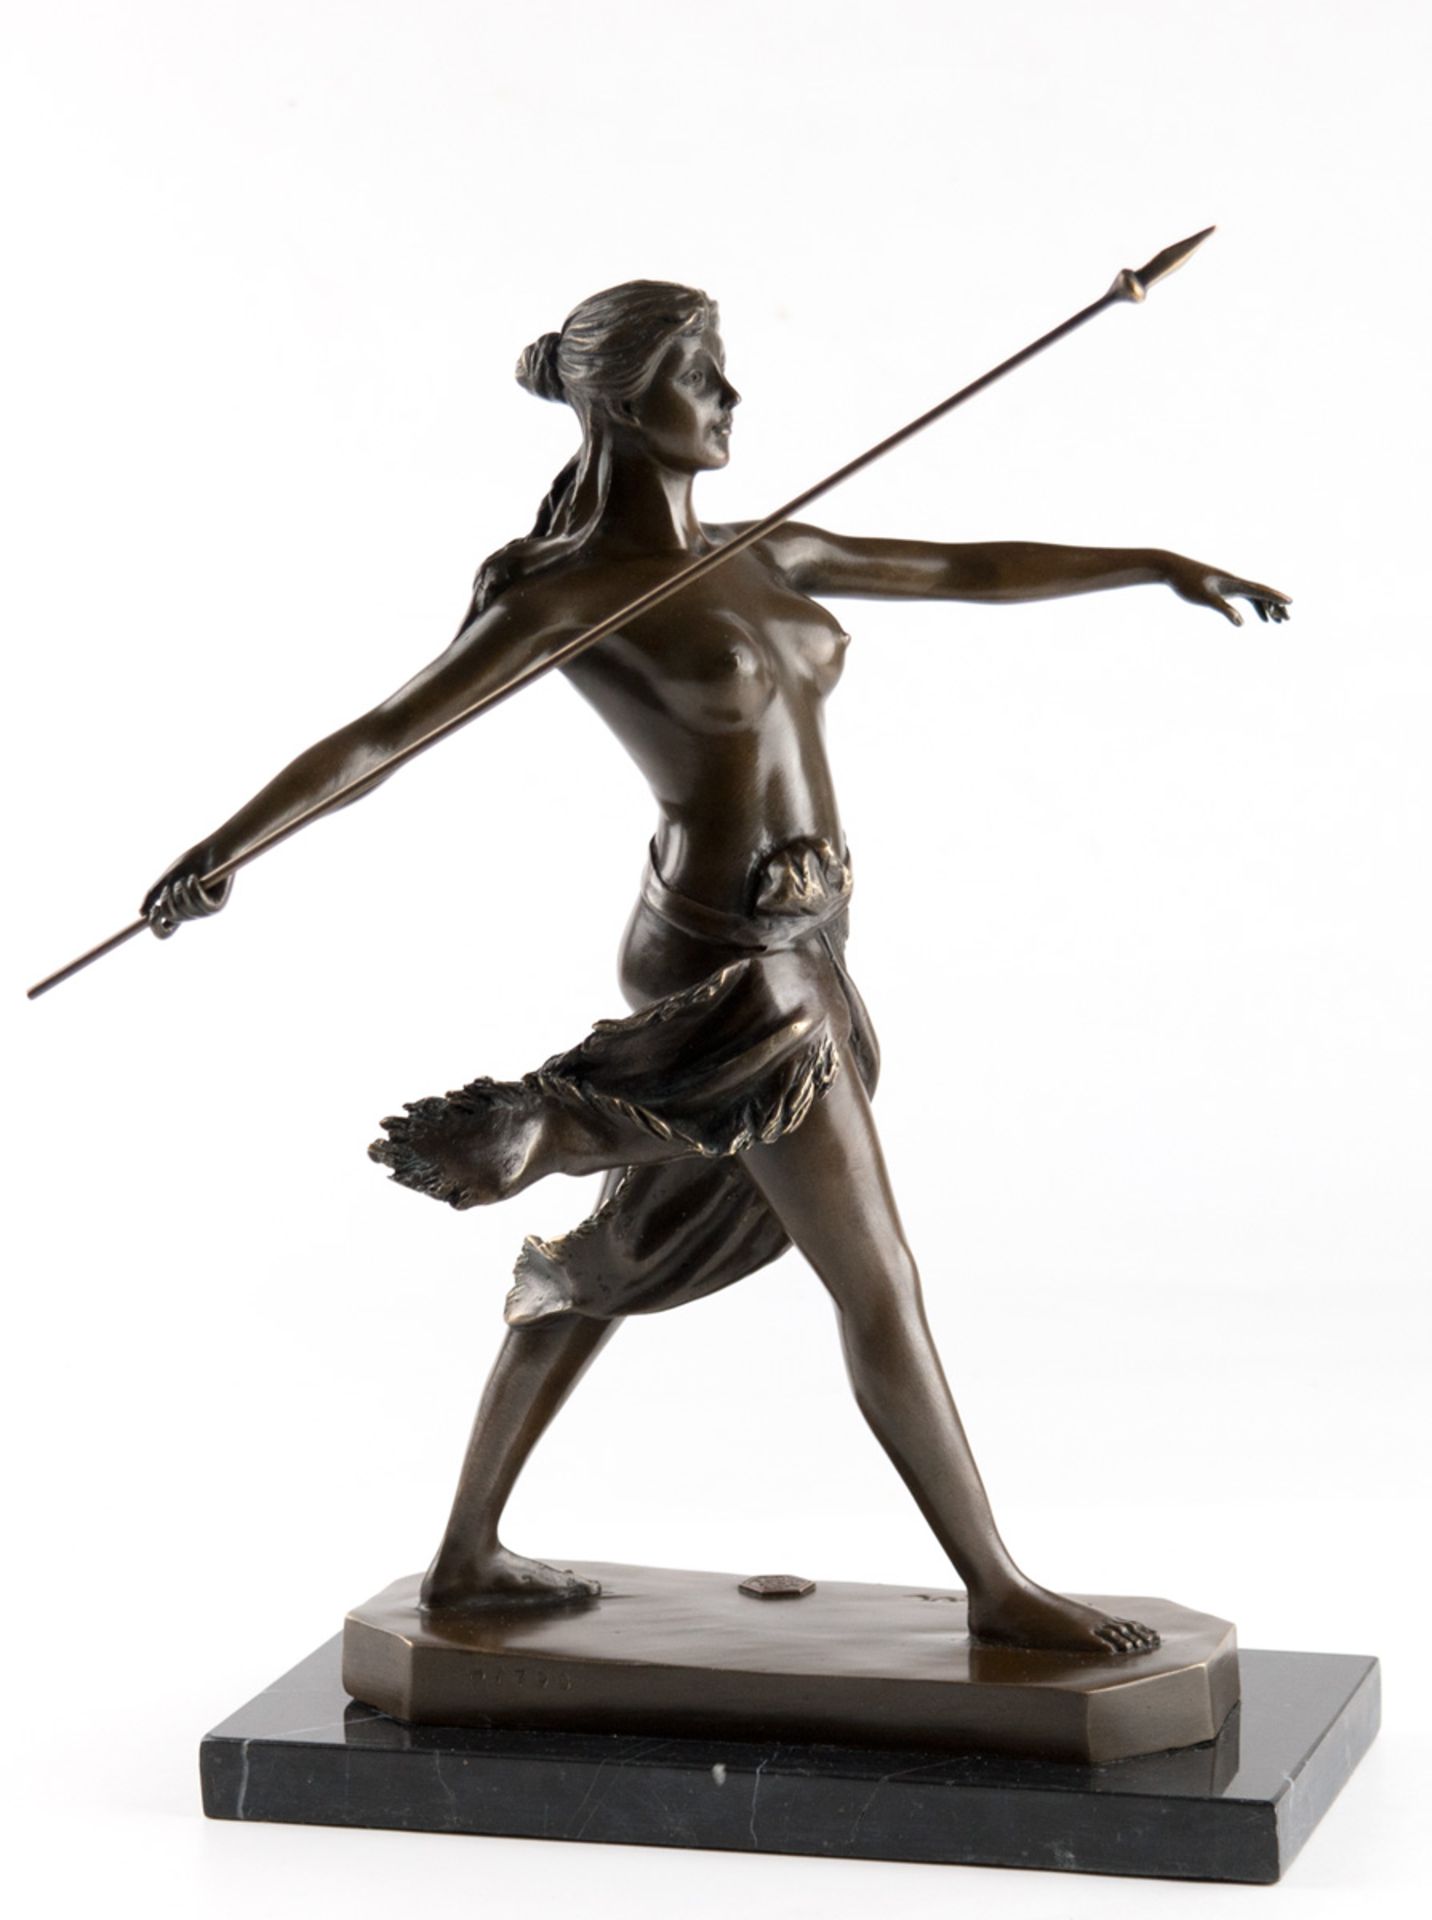 Bronze-Figur "Amazone mit Speer", Nachguß 20. Jh., bez. "R. Leger", braun patiniert,Gießermarke "J.